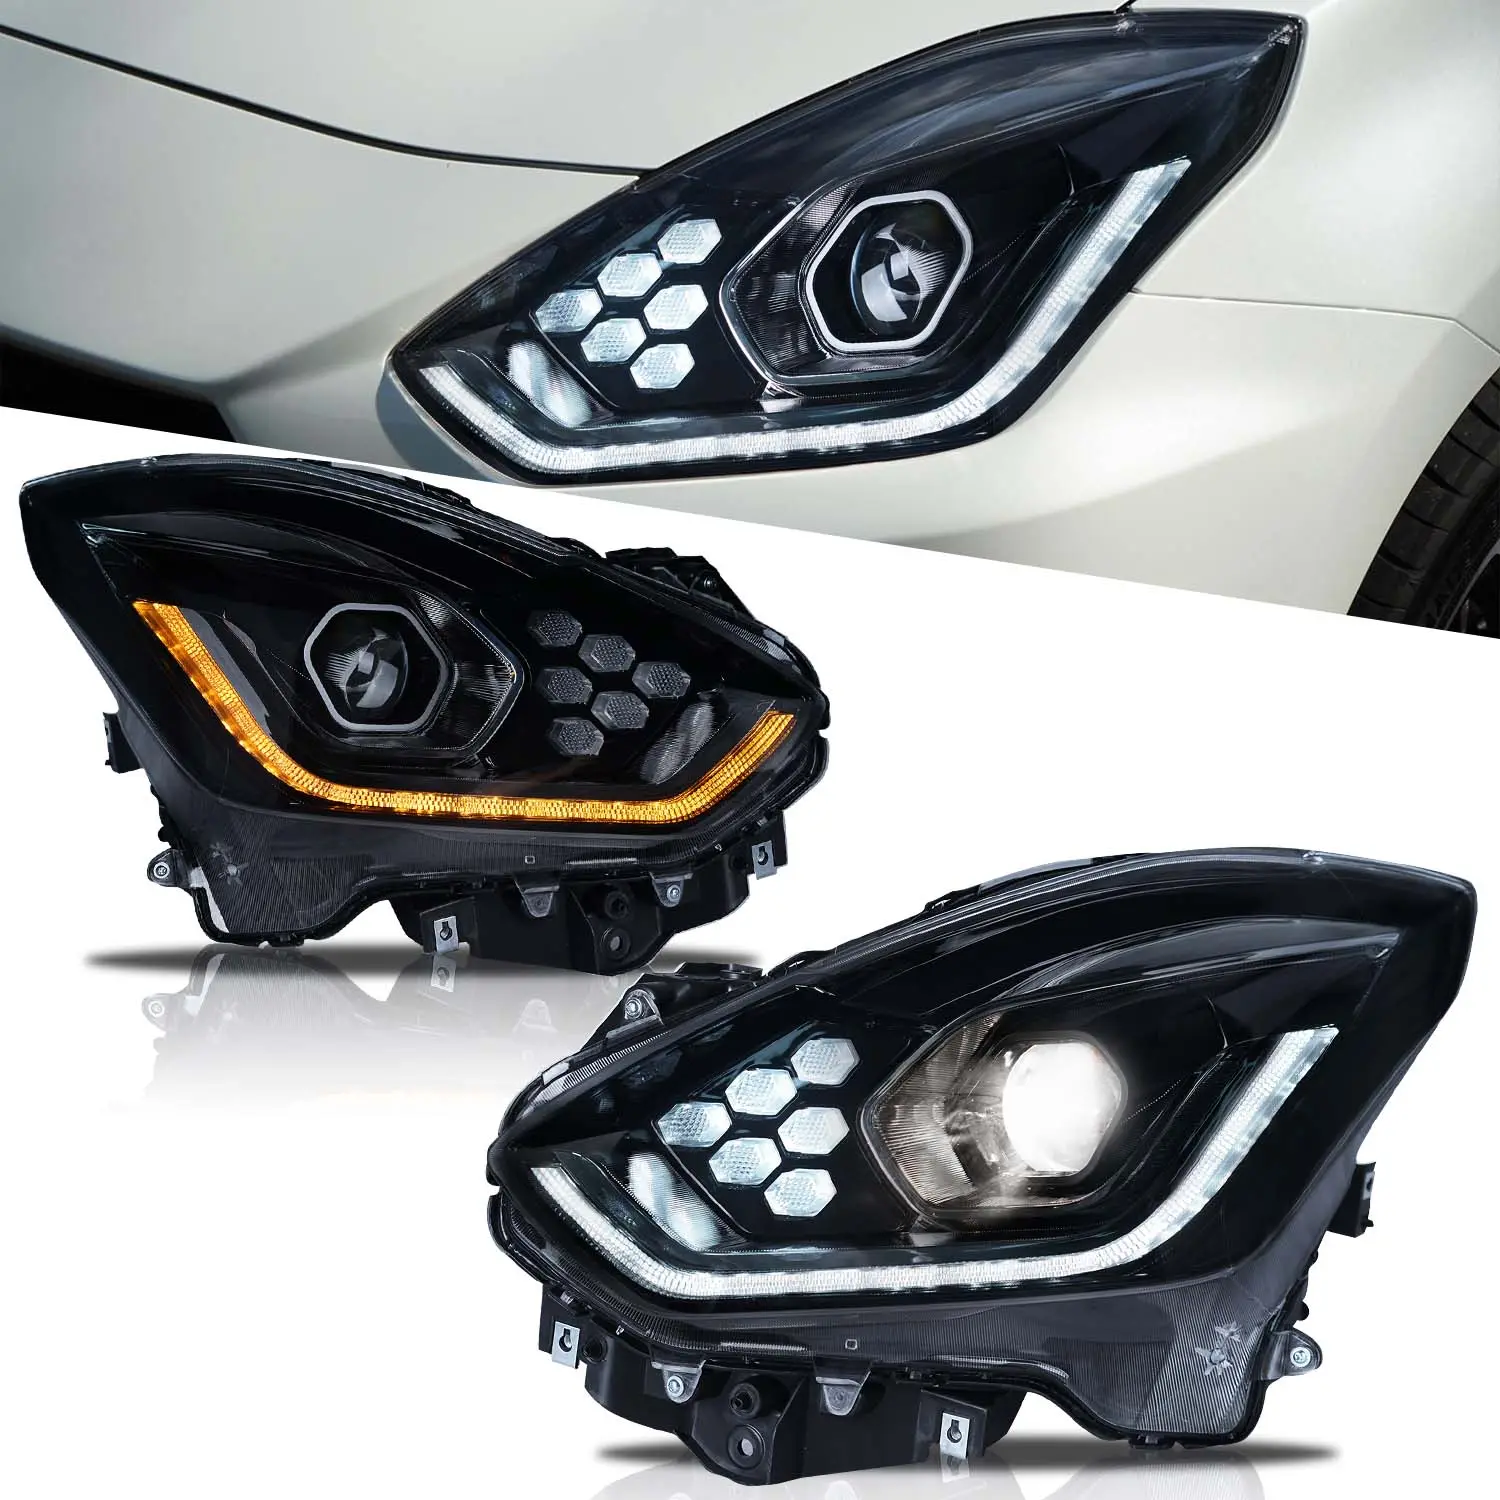 Archaic 새로운 디자인 Led 헤드 라이트 스즈키 스위프트 2018-2021 헤드 램프 DRL 신호 프로젝터 렌즈 자동차 자동차 램프 액세서리